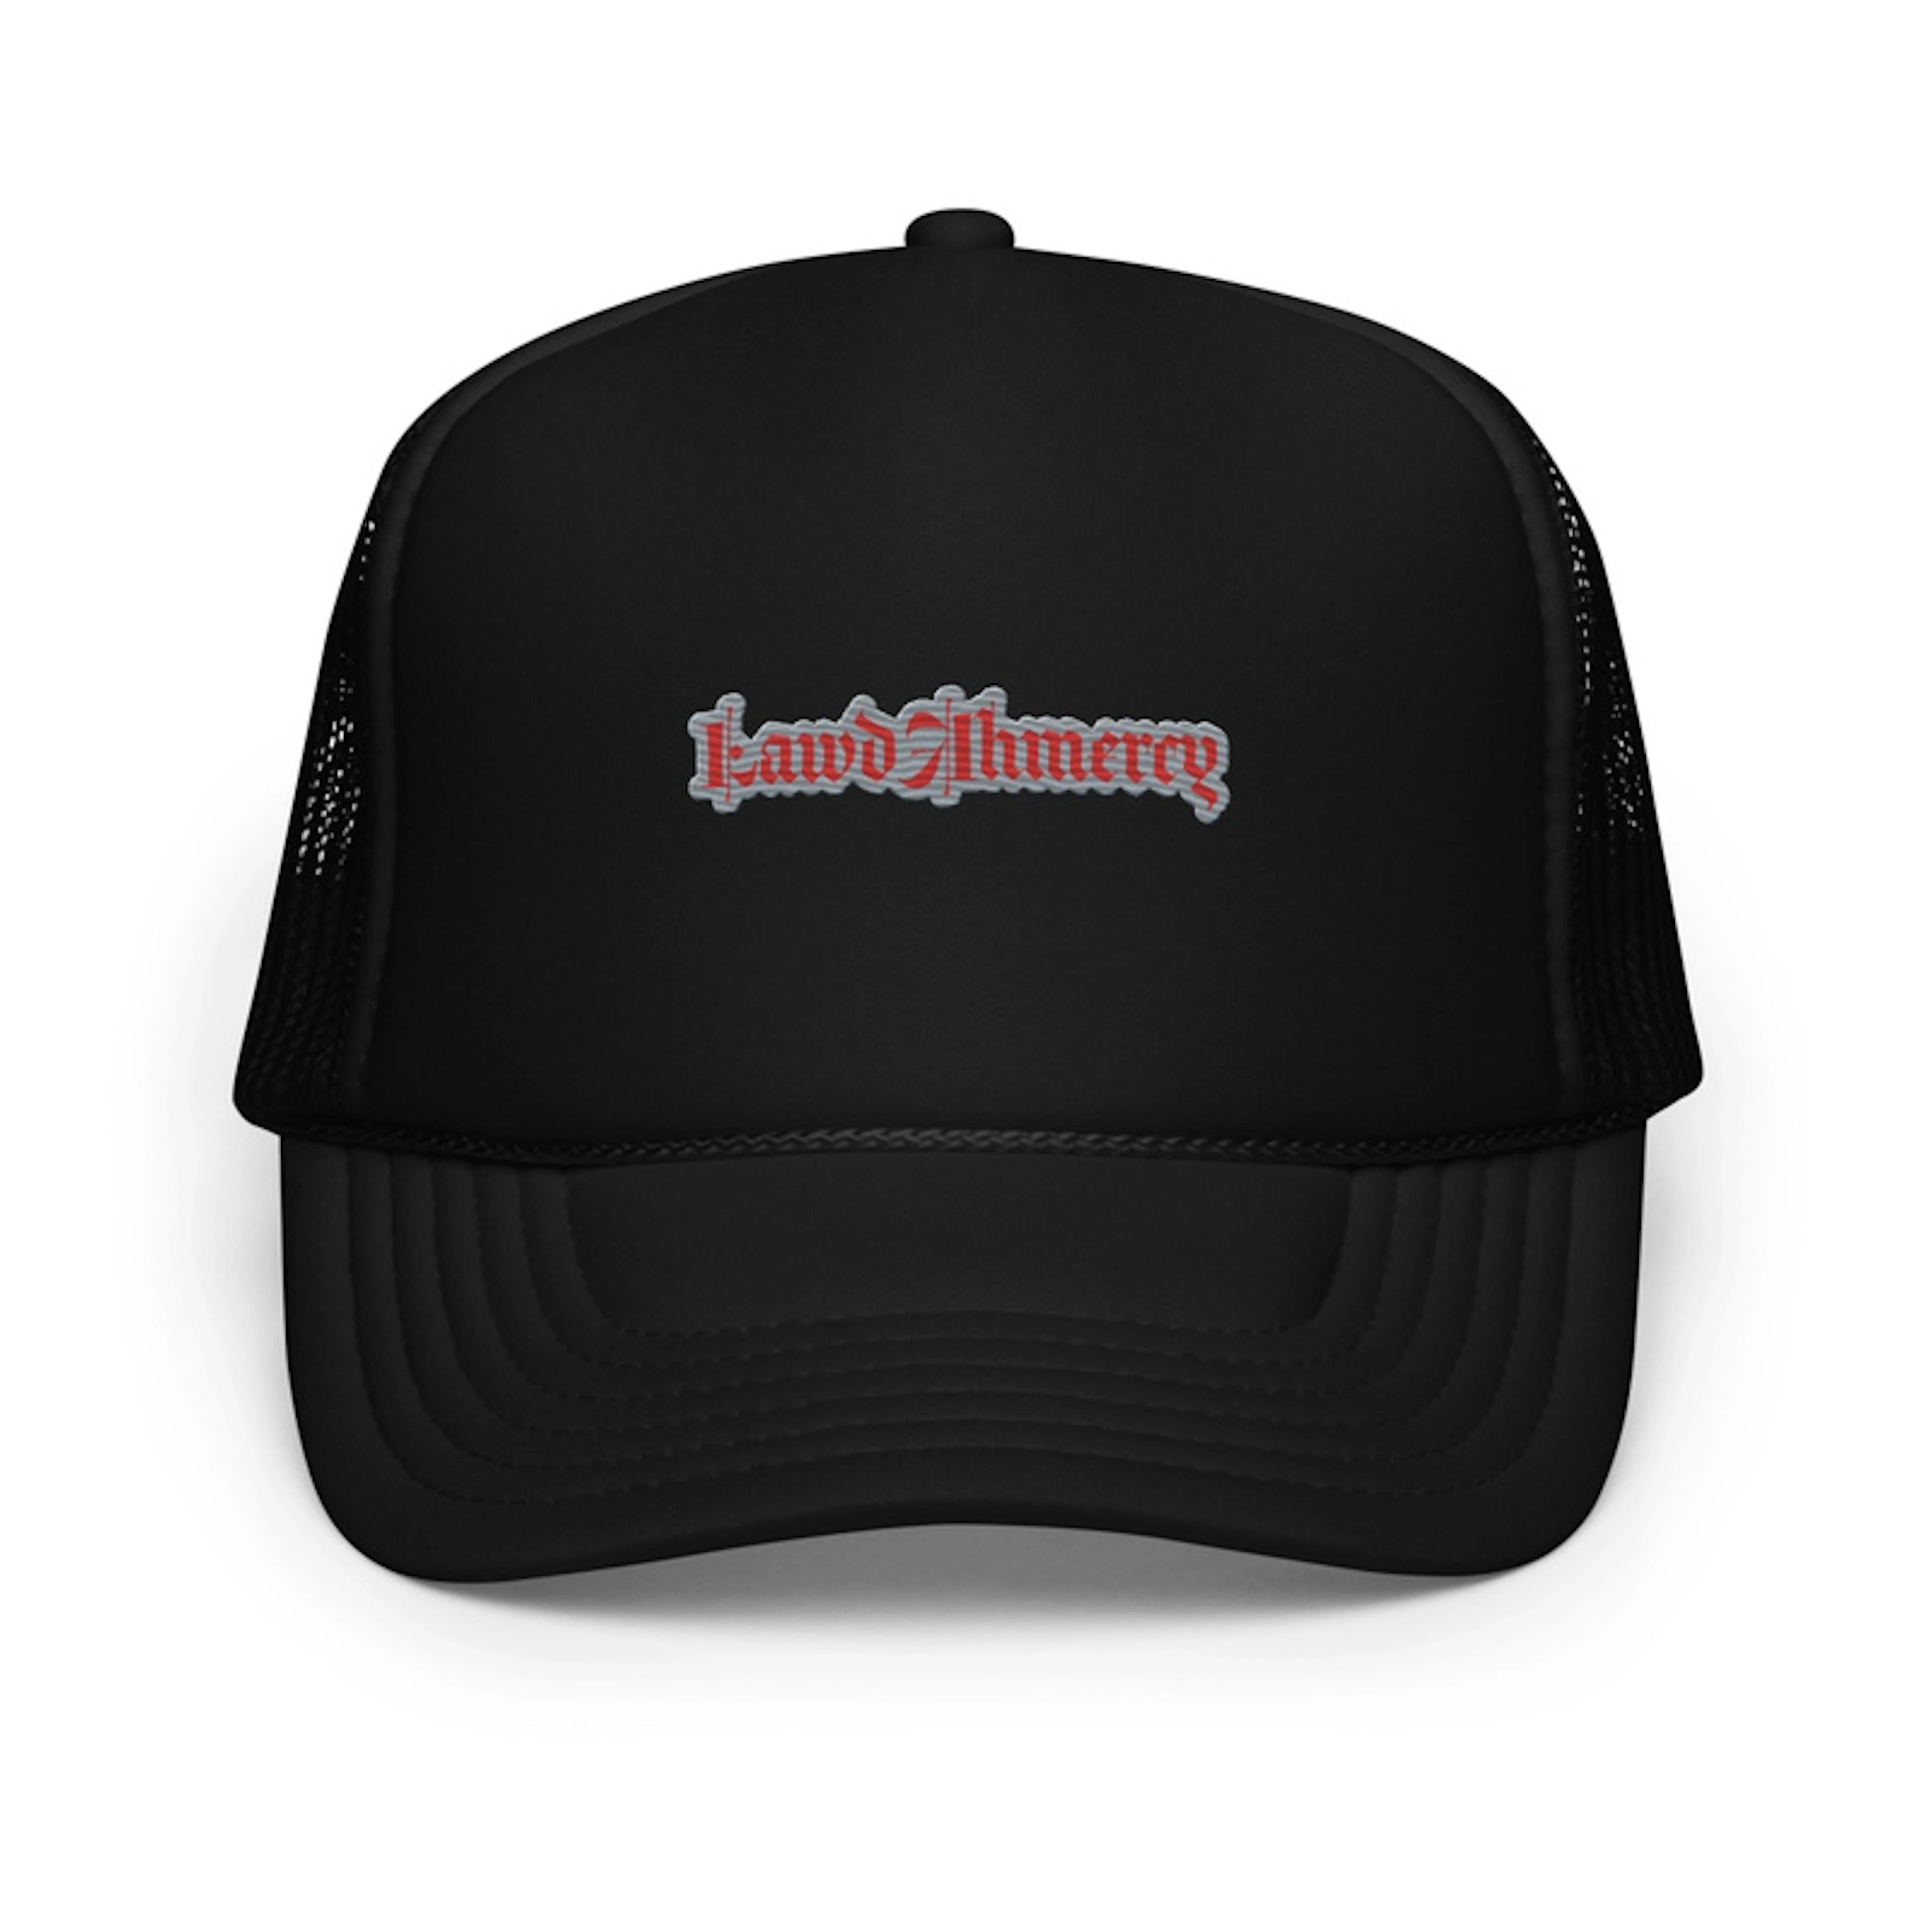 LawdAhmercy Trucker hat 